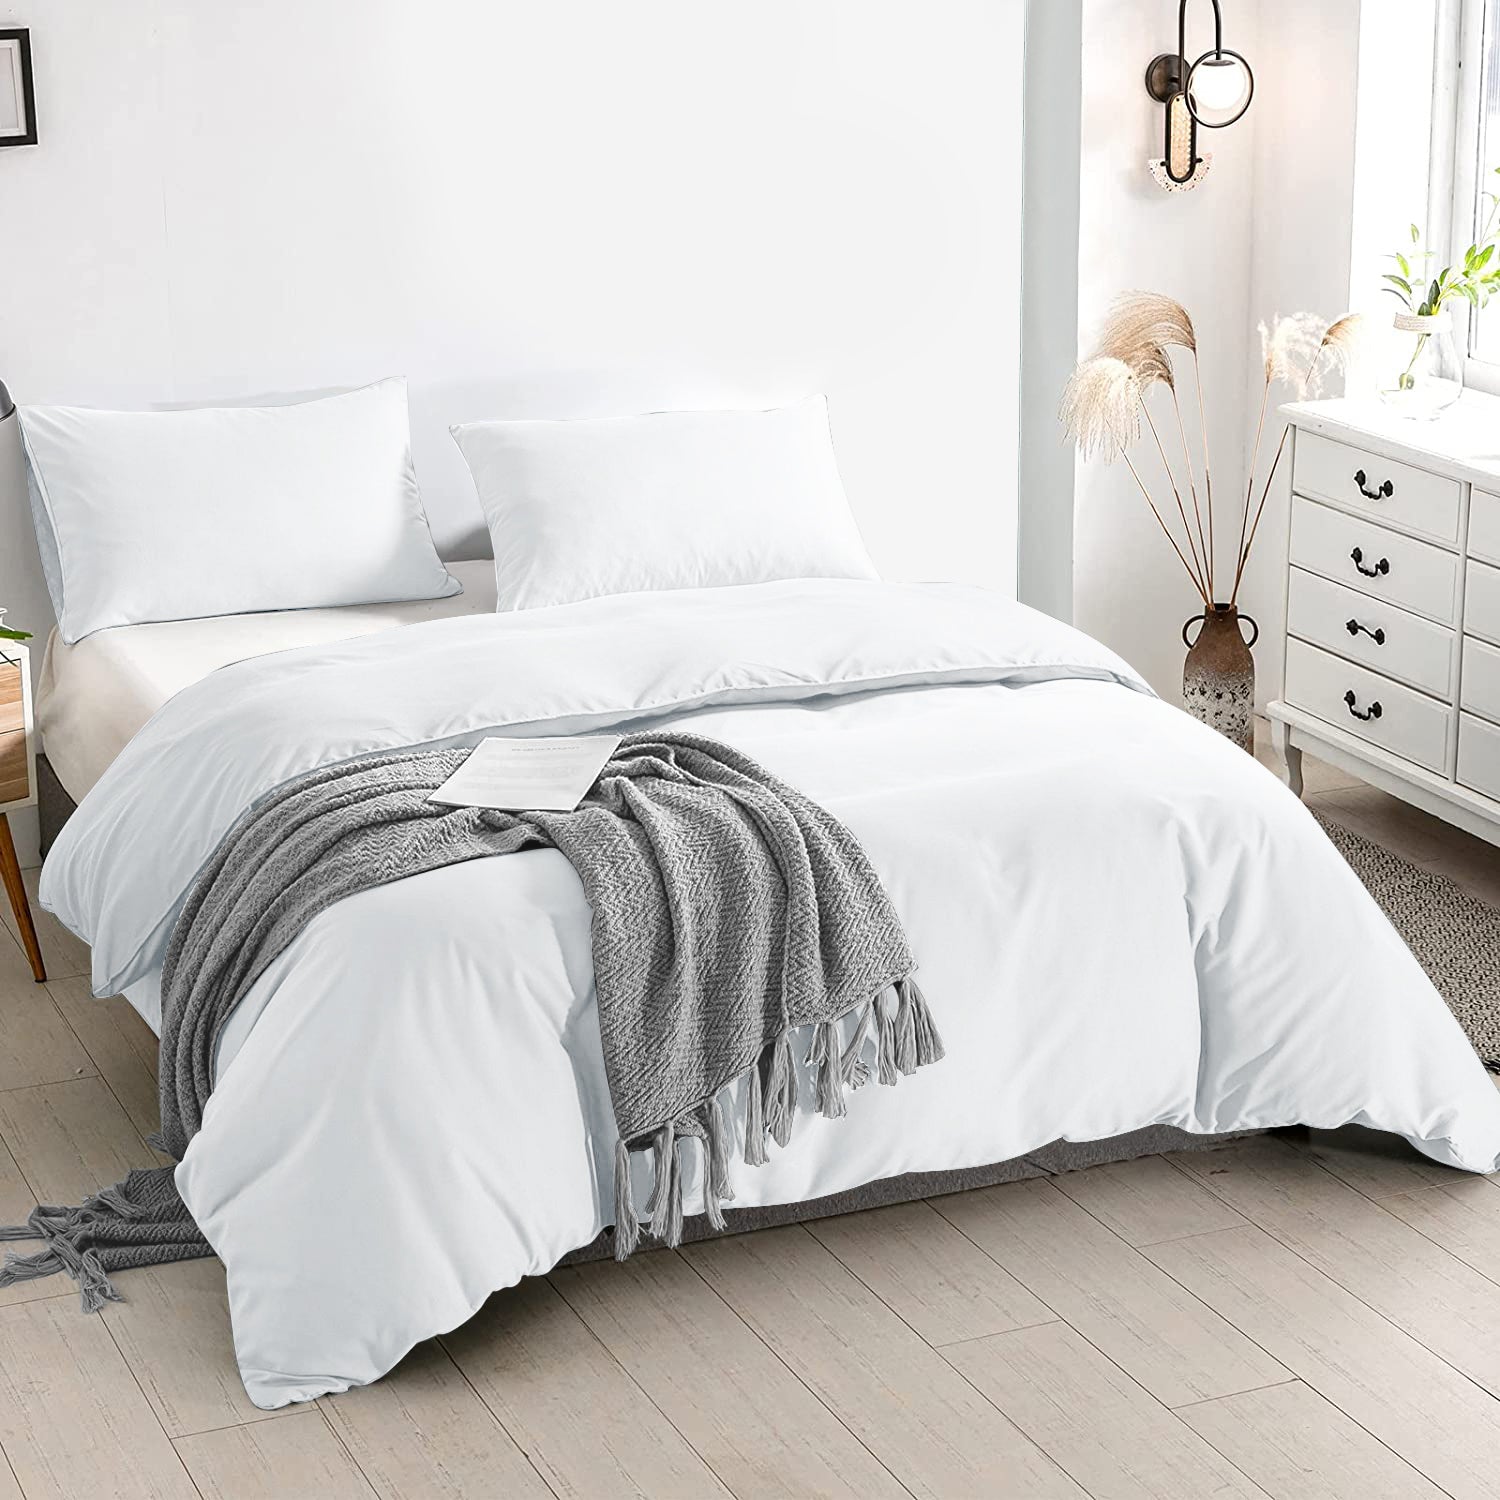 White Duvet Cover Plain Bedding Set